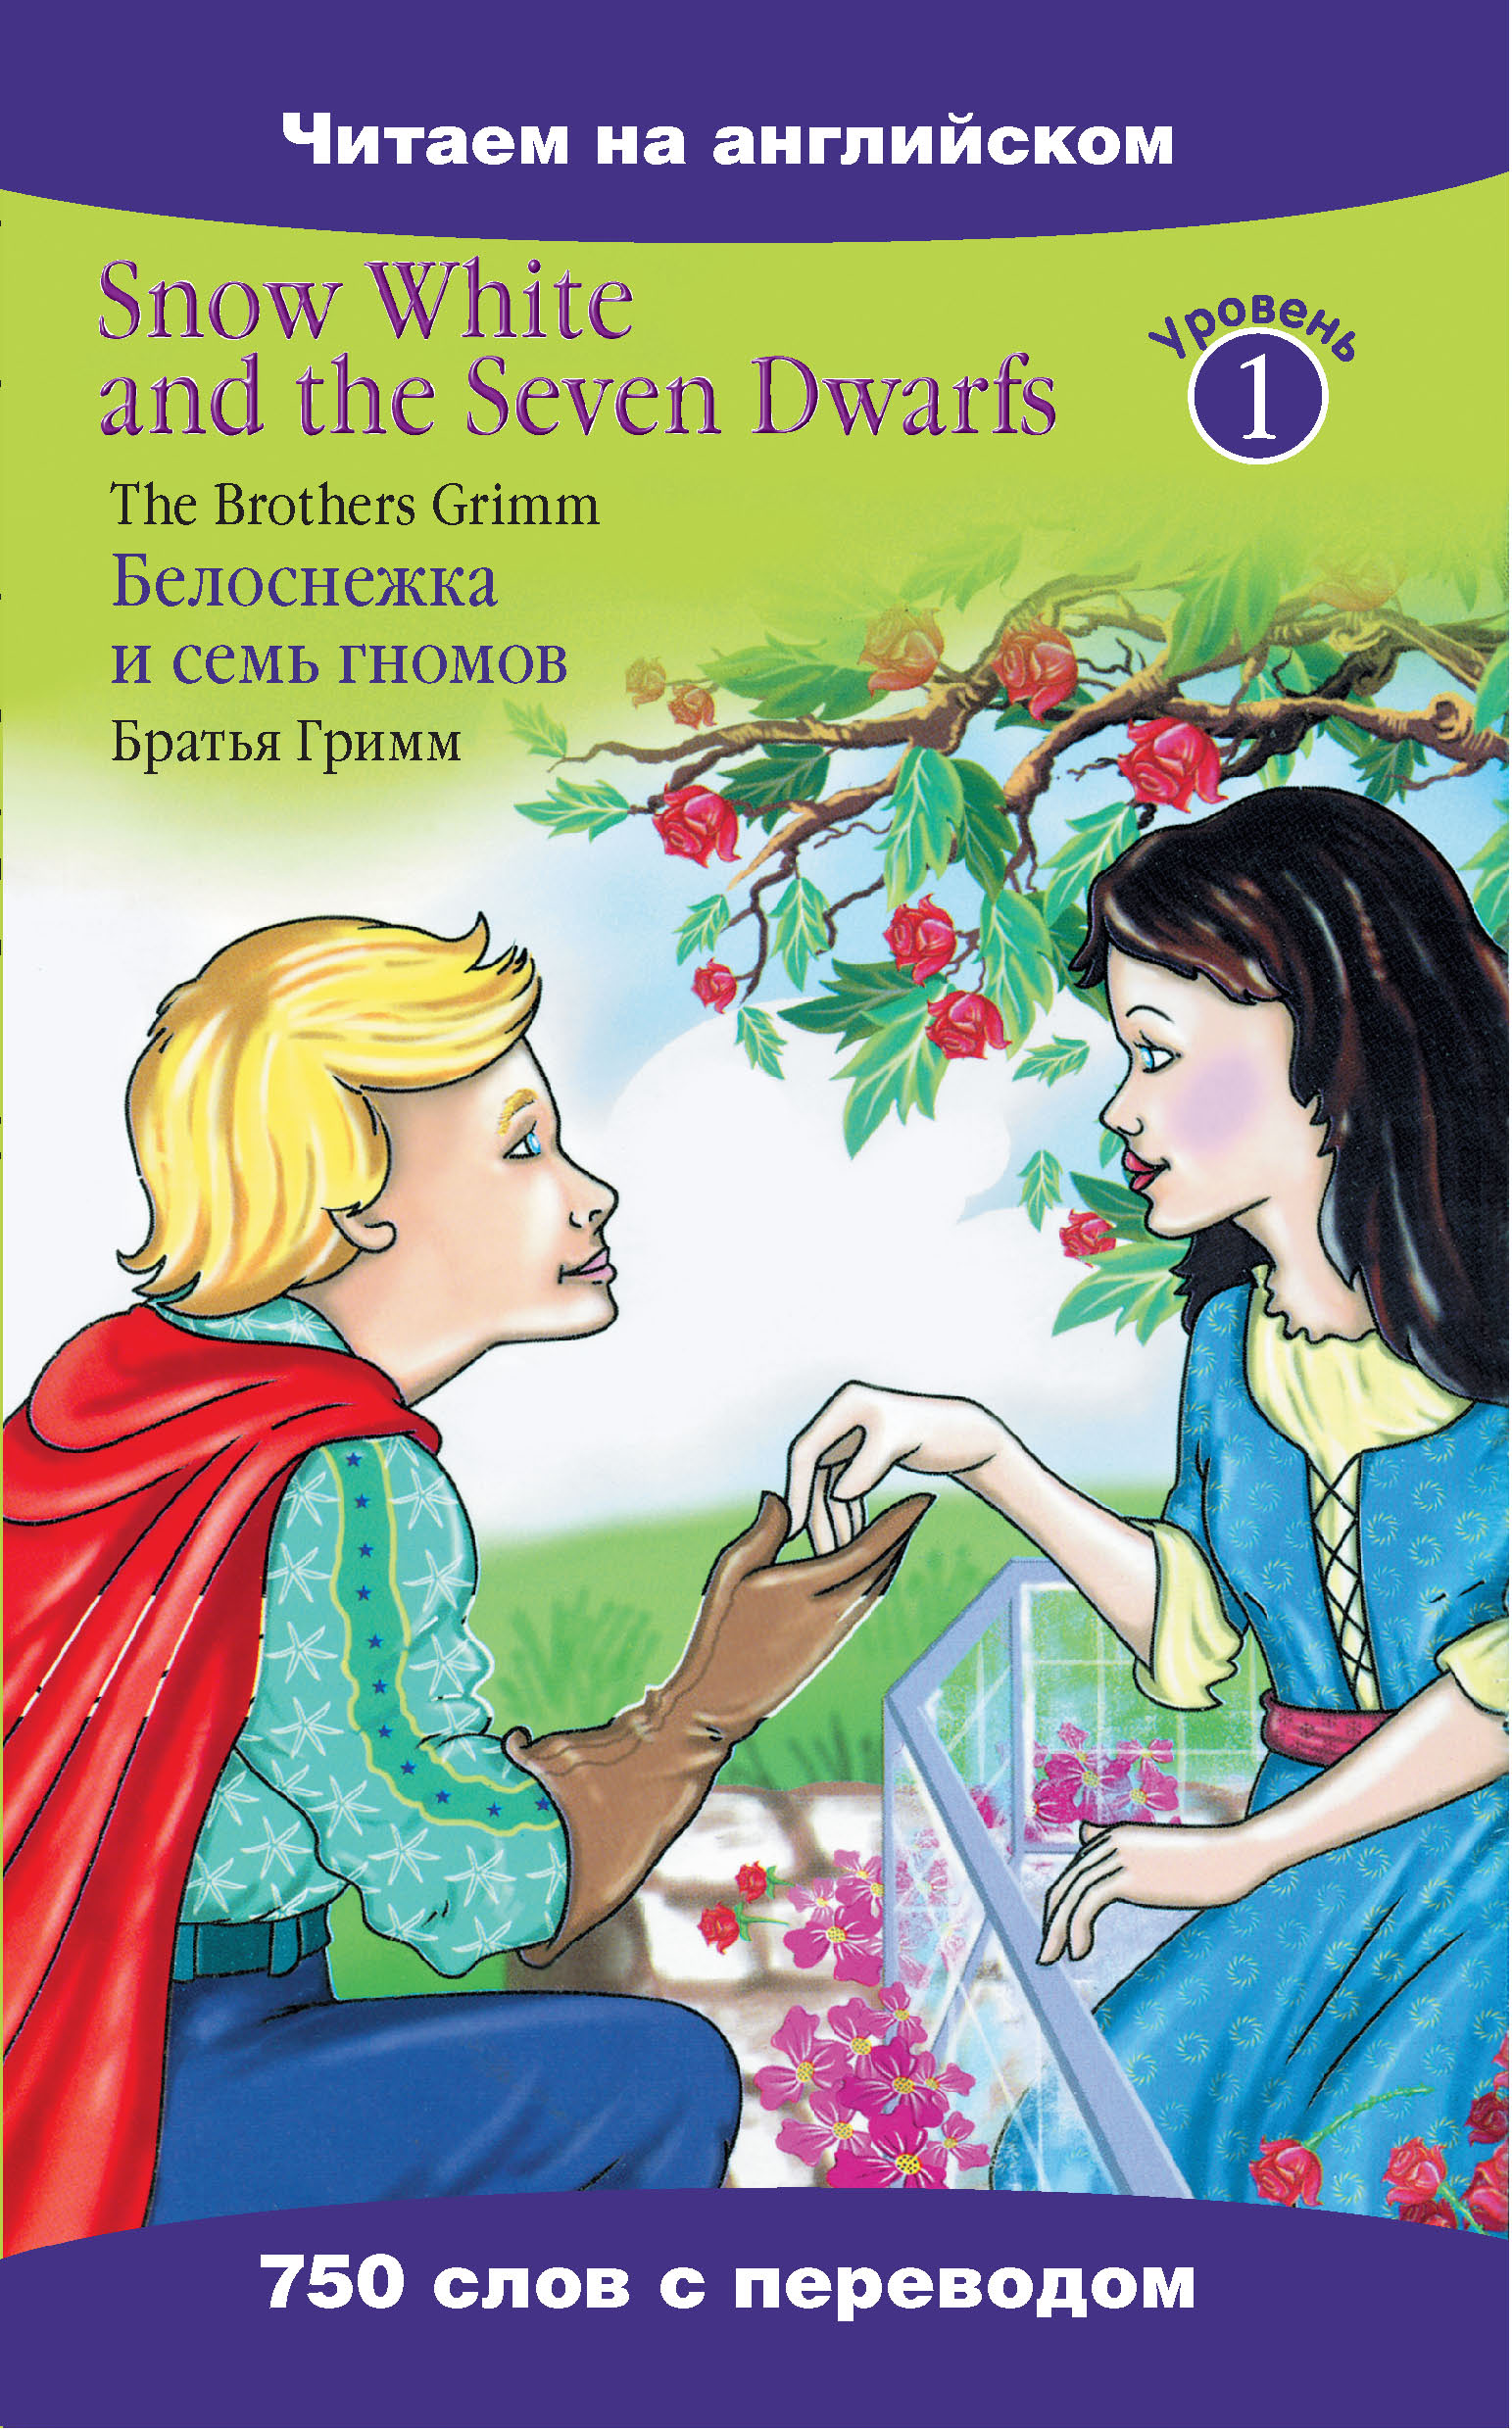 Книга Snow White and the Seven Dwarfs / Белоснежка и семь гномов из серии Читаем на английском, созданная Якоб Гримм, может относится к жанру Иностранные языки, Европейская старинная литература, Сказки. Стоимость электронной книги Snow White and the Seven Dwarfs / Белоснежка и семь гномов с идентификатором 6449042 составляет 29.95 руб.